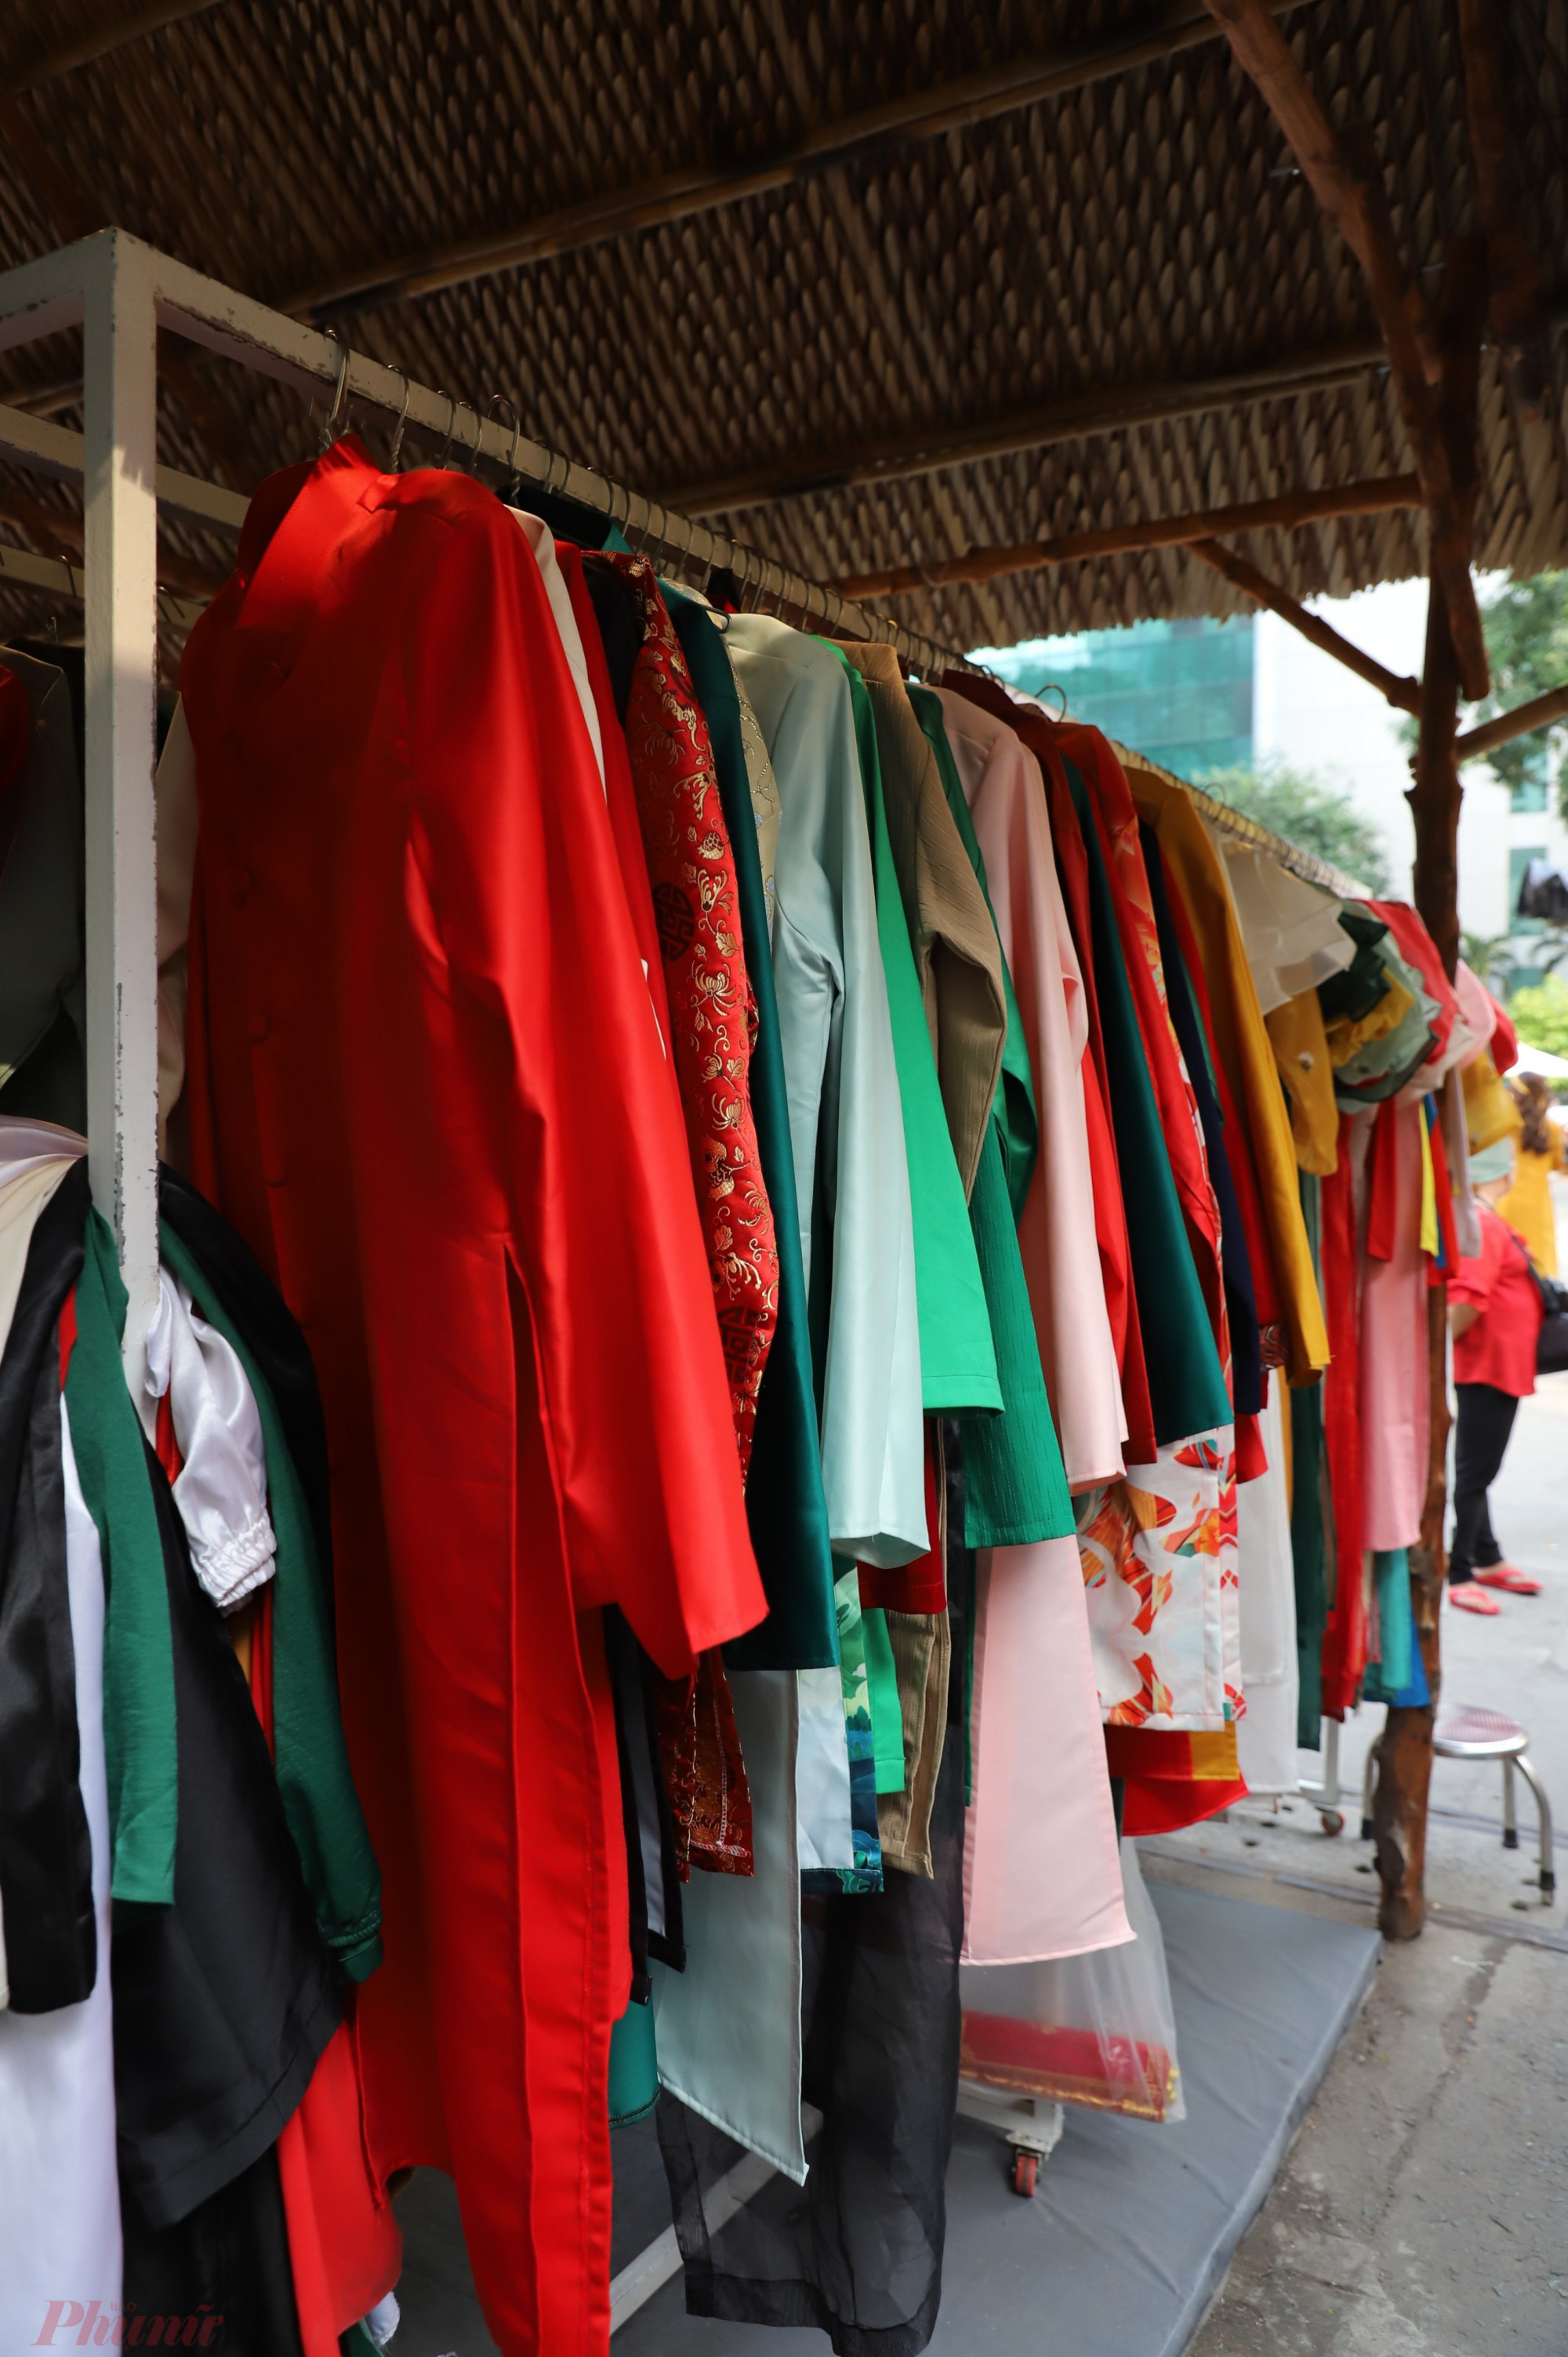 Tại cửa hàng cho thuê áo dài được treo hàng trăm bộ áo dài đủ màu sắc, kích thước để người dân tiện lựa chọn bộ đồ phù hợp.